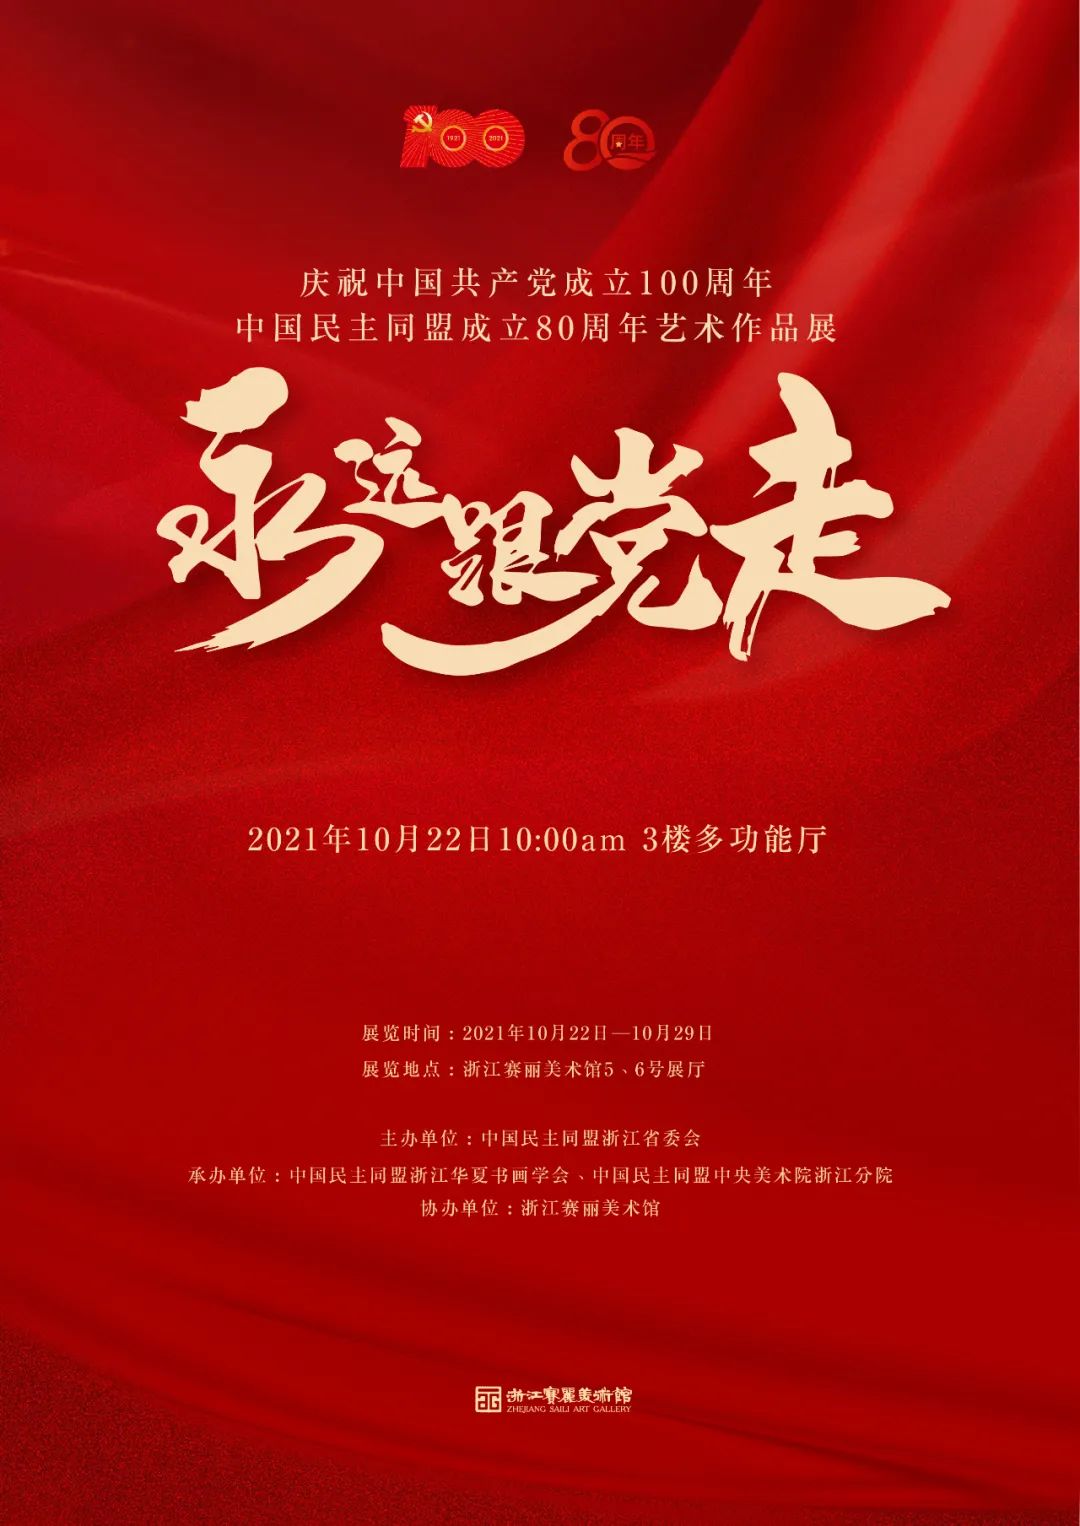 永远跟党走——庆祝中国共产党成立100周年、中国民主同盟成立80周年艺术作品展